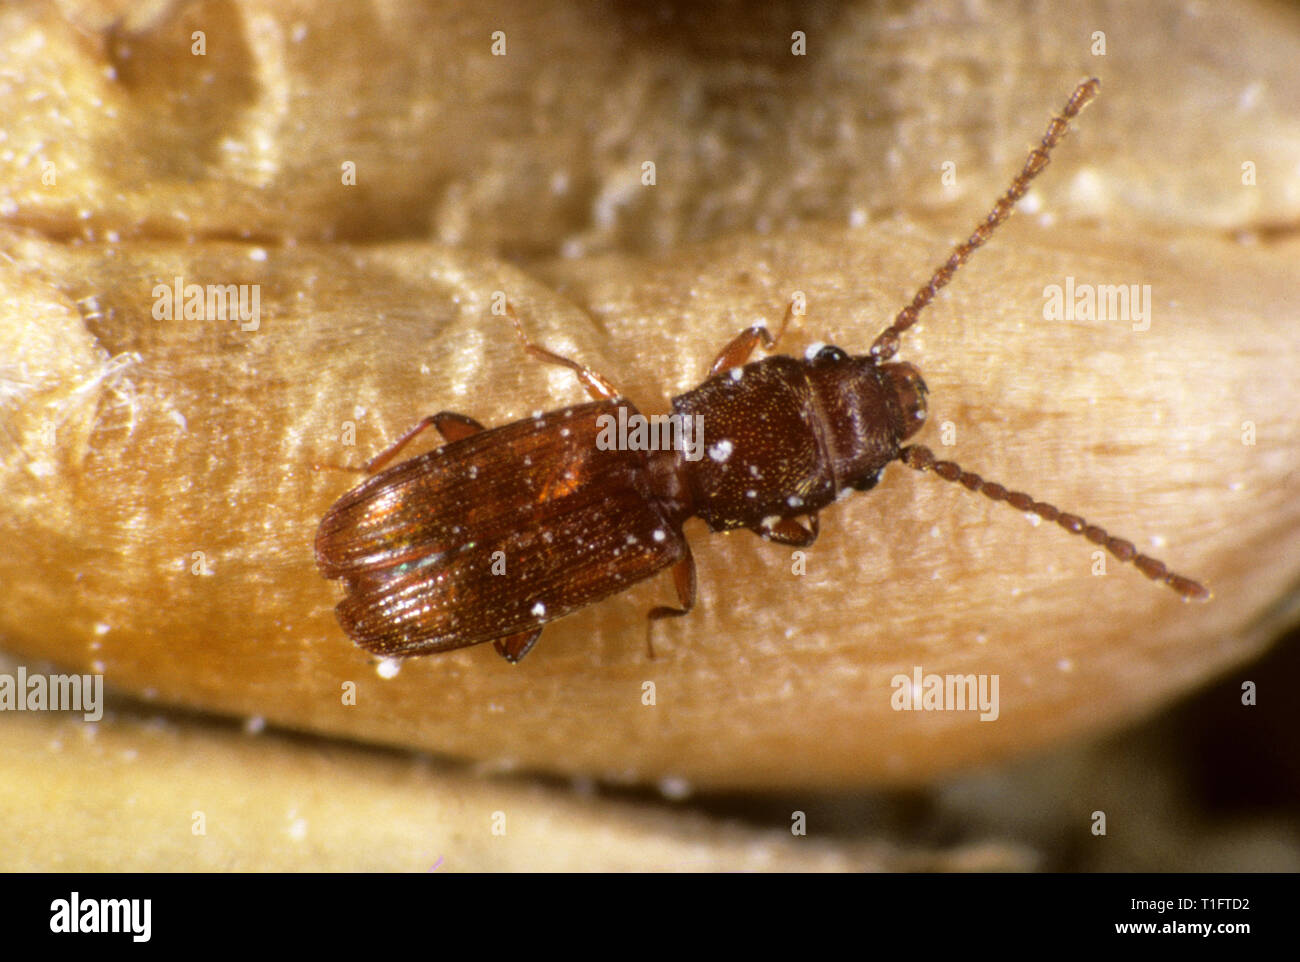 Rost rot oder Flache Korn Käfer (Cryptolestes Art) ein Müsli storage Pest Insekt auf Weizen Korn Stockfoto